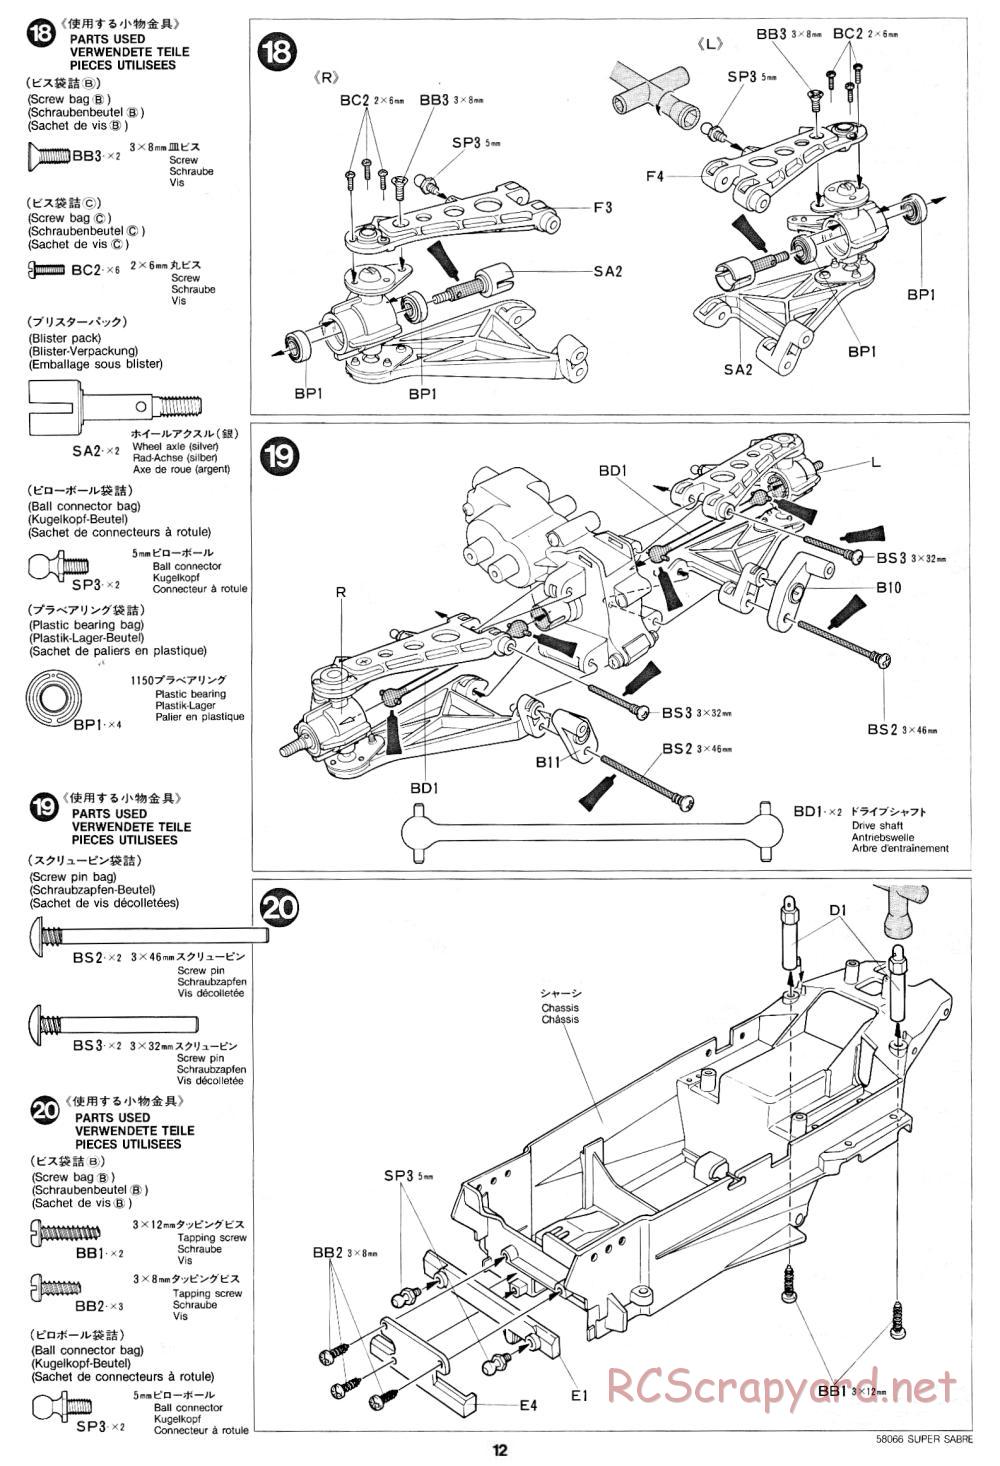 Tamiya - Super Sabre - 58066 - Manual - Page 12